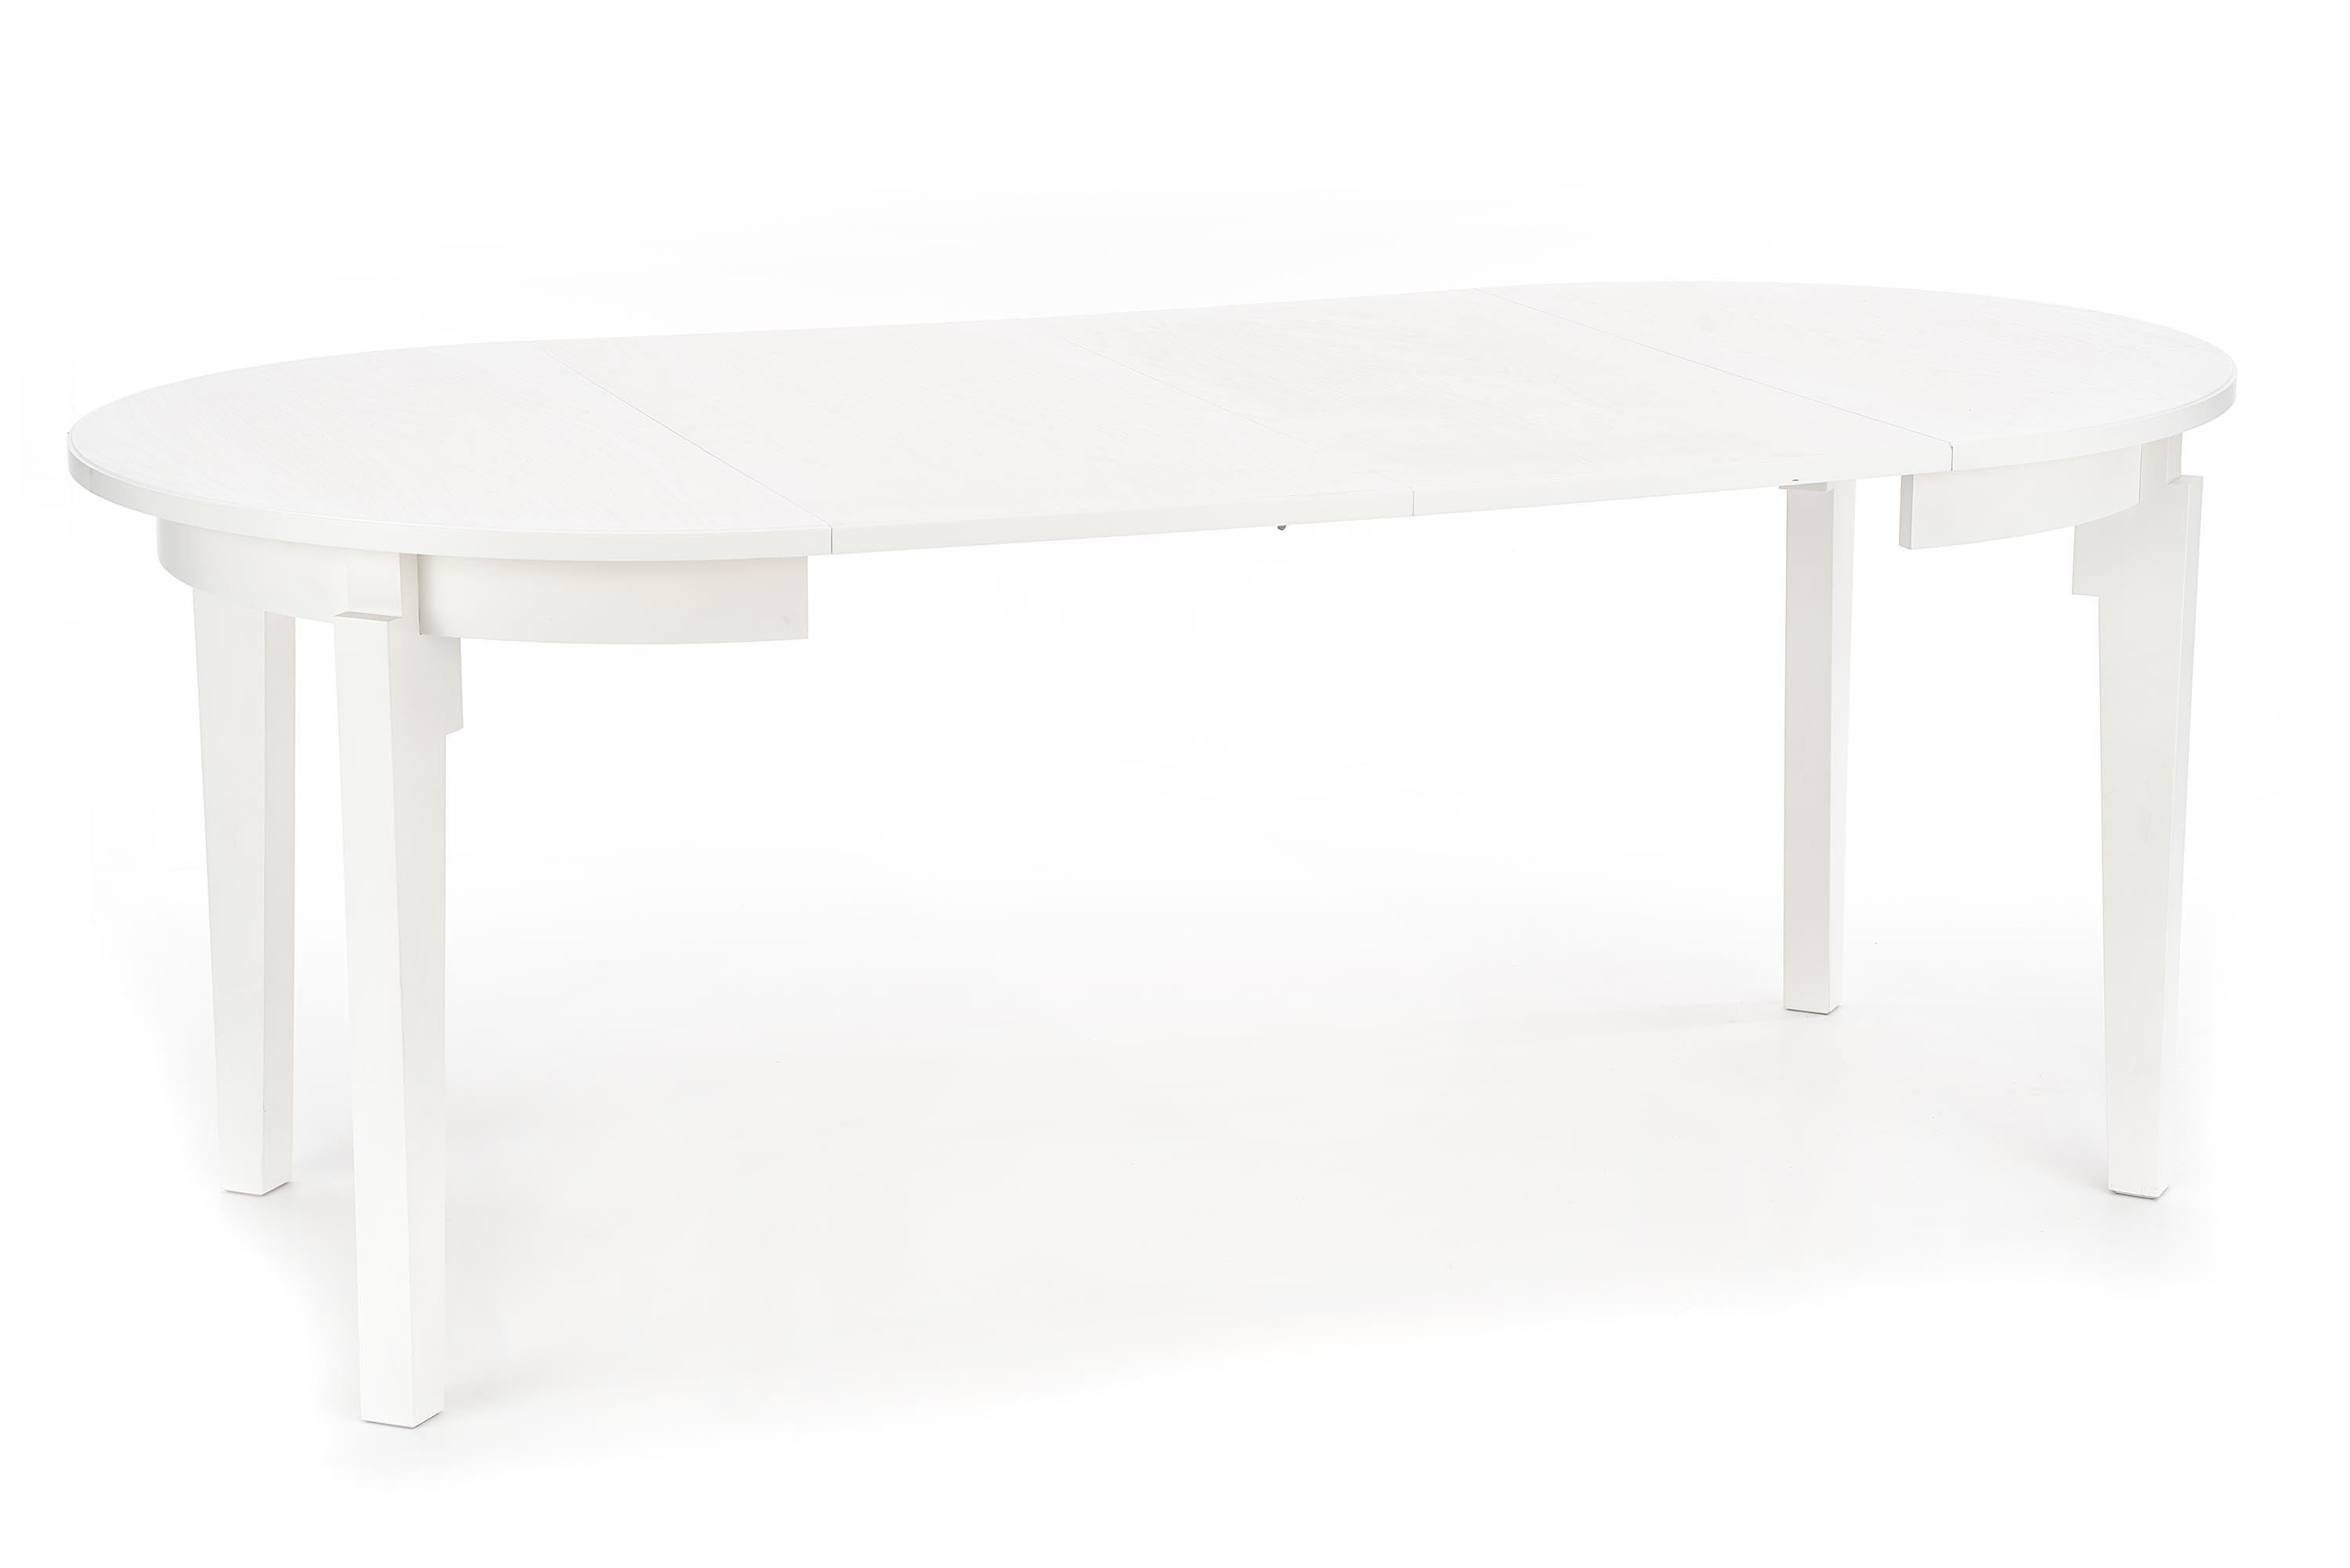 SORBUS stół rozkładany, blat - biały, nogi - białe